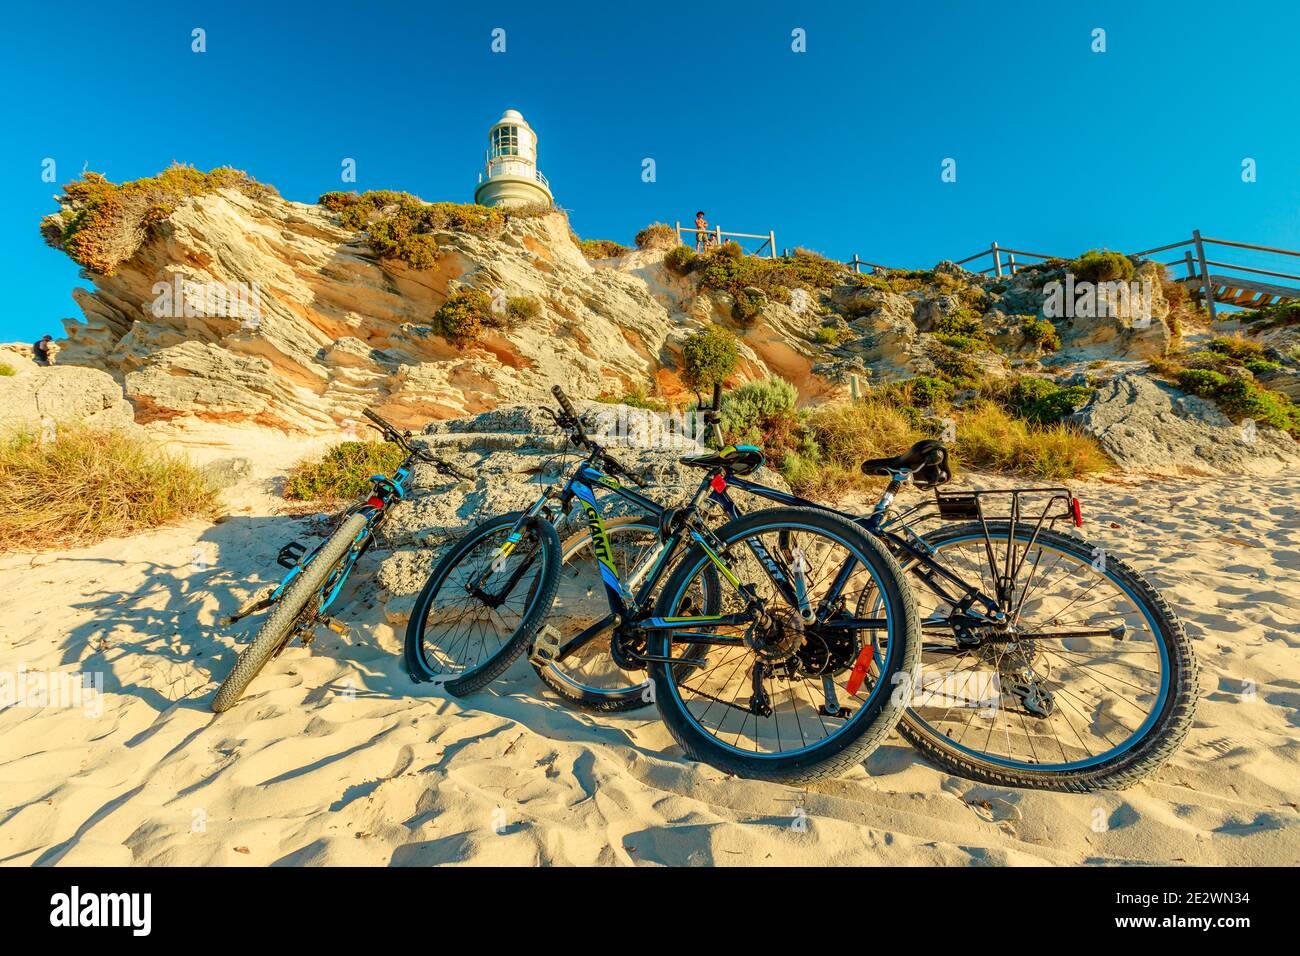 Rottnest Island, Australie occidentale - 4 janvier 2018 : bicyclettes de tourisme garées au phare de Bathurst, sur la côte nord de l'île Rottnest, près de Perth Banque D'Images